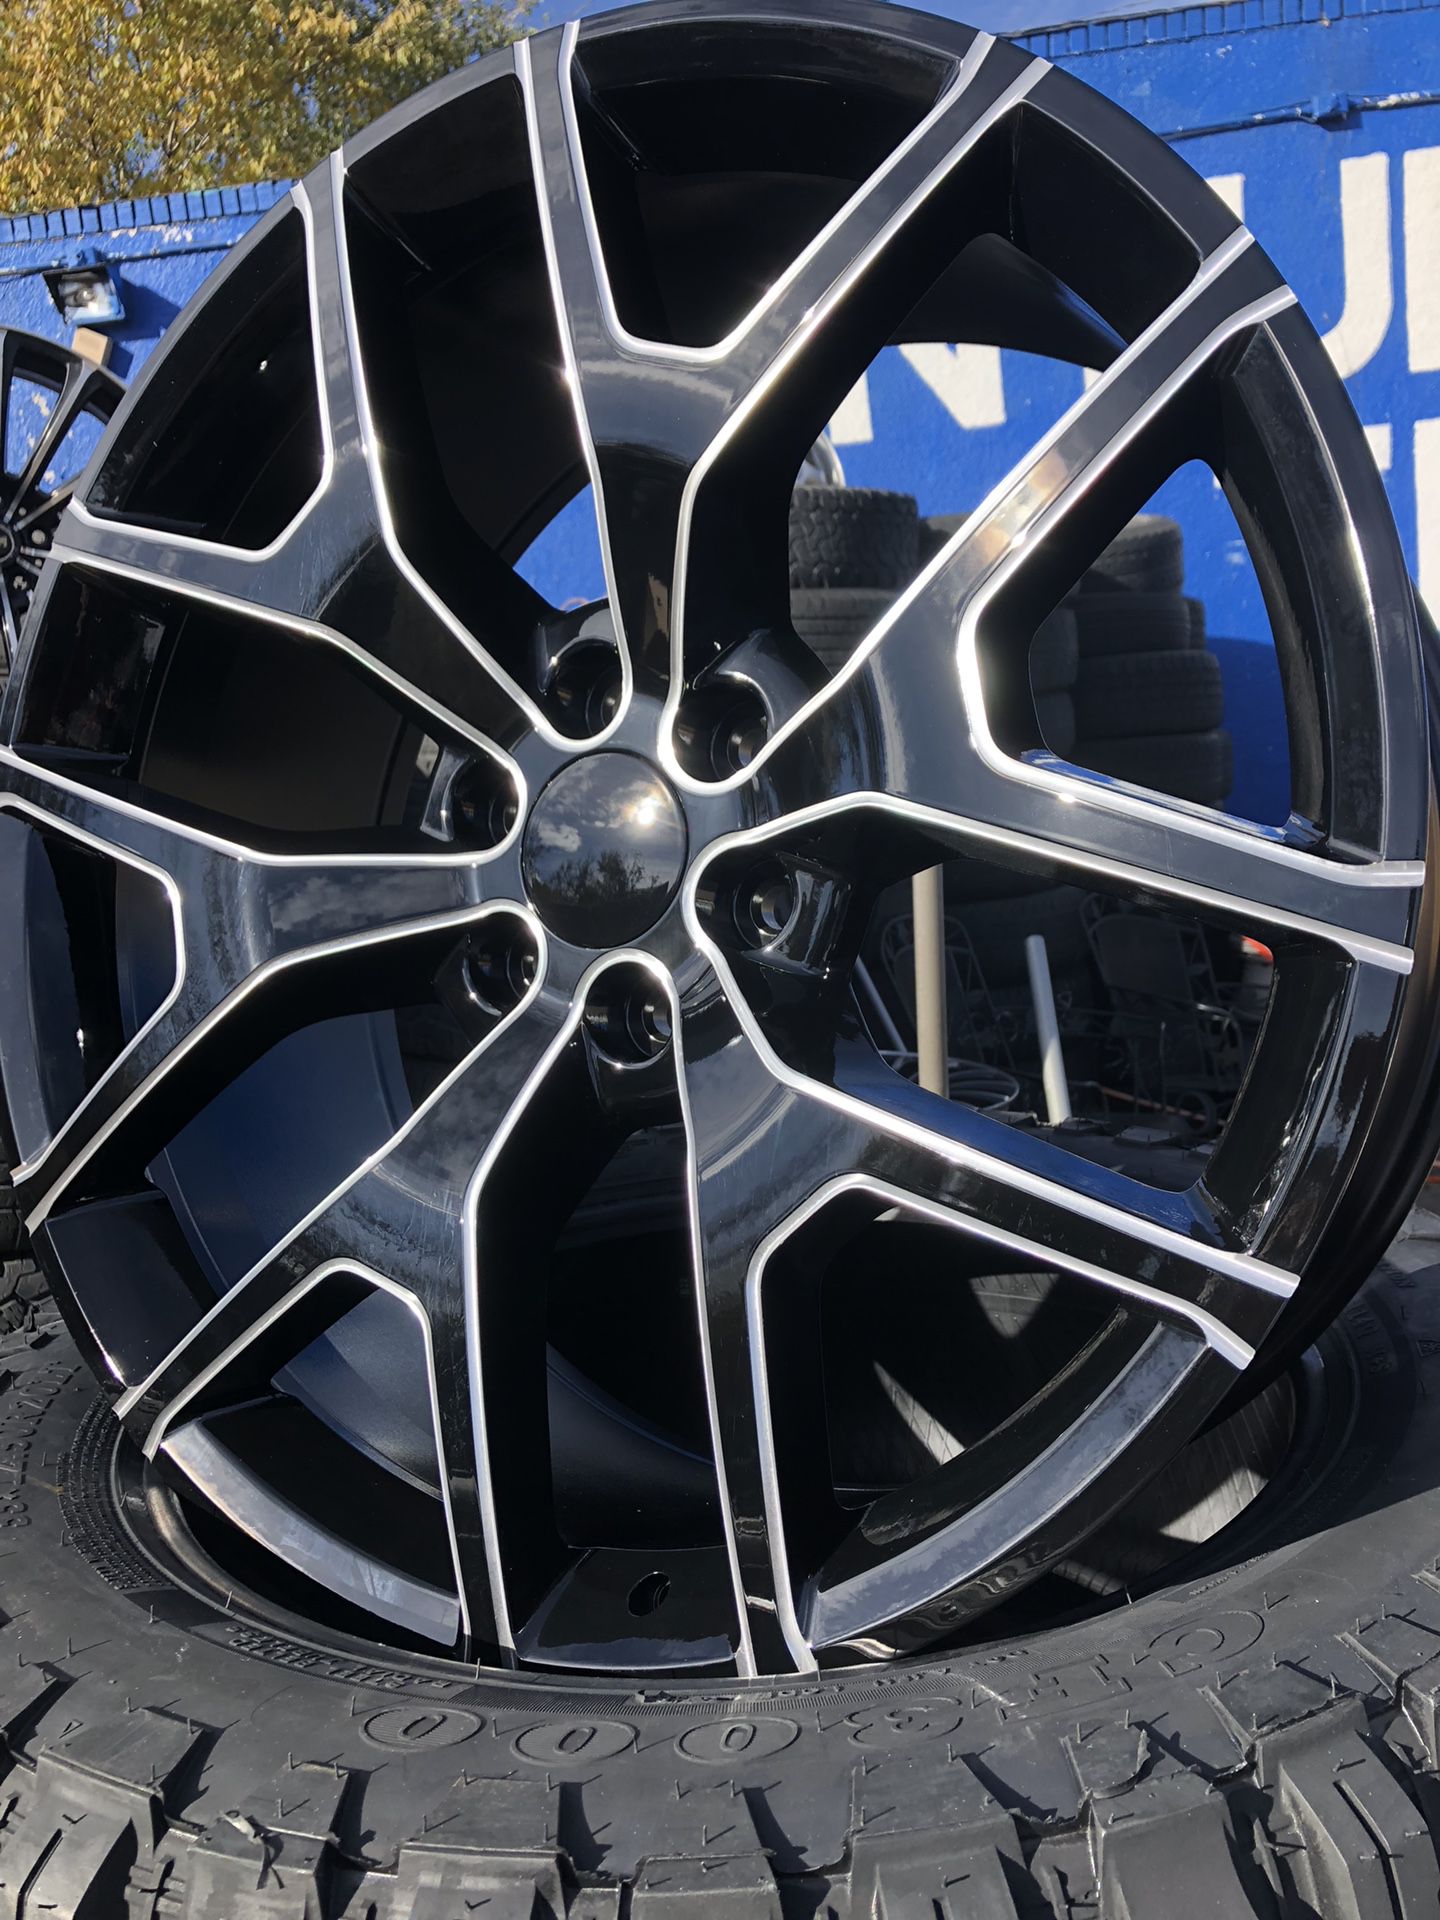 GMC Sierra wheels 6x139.7